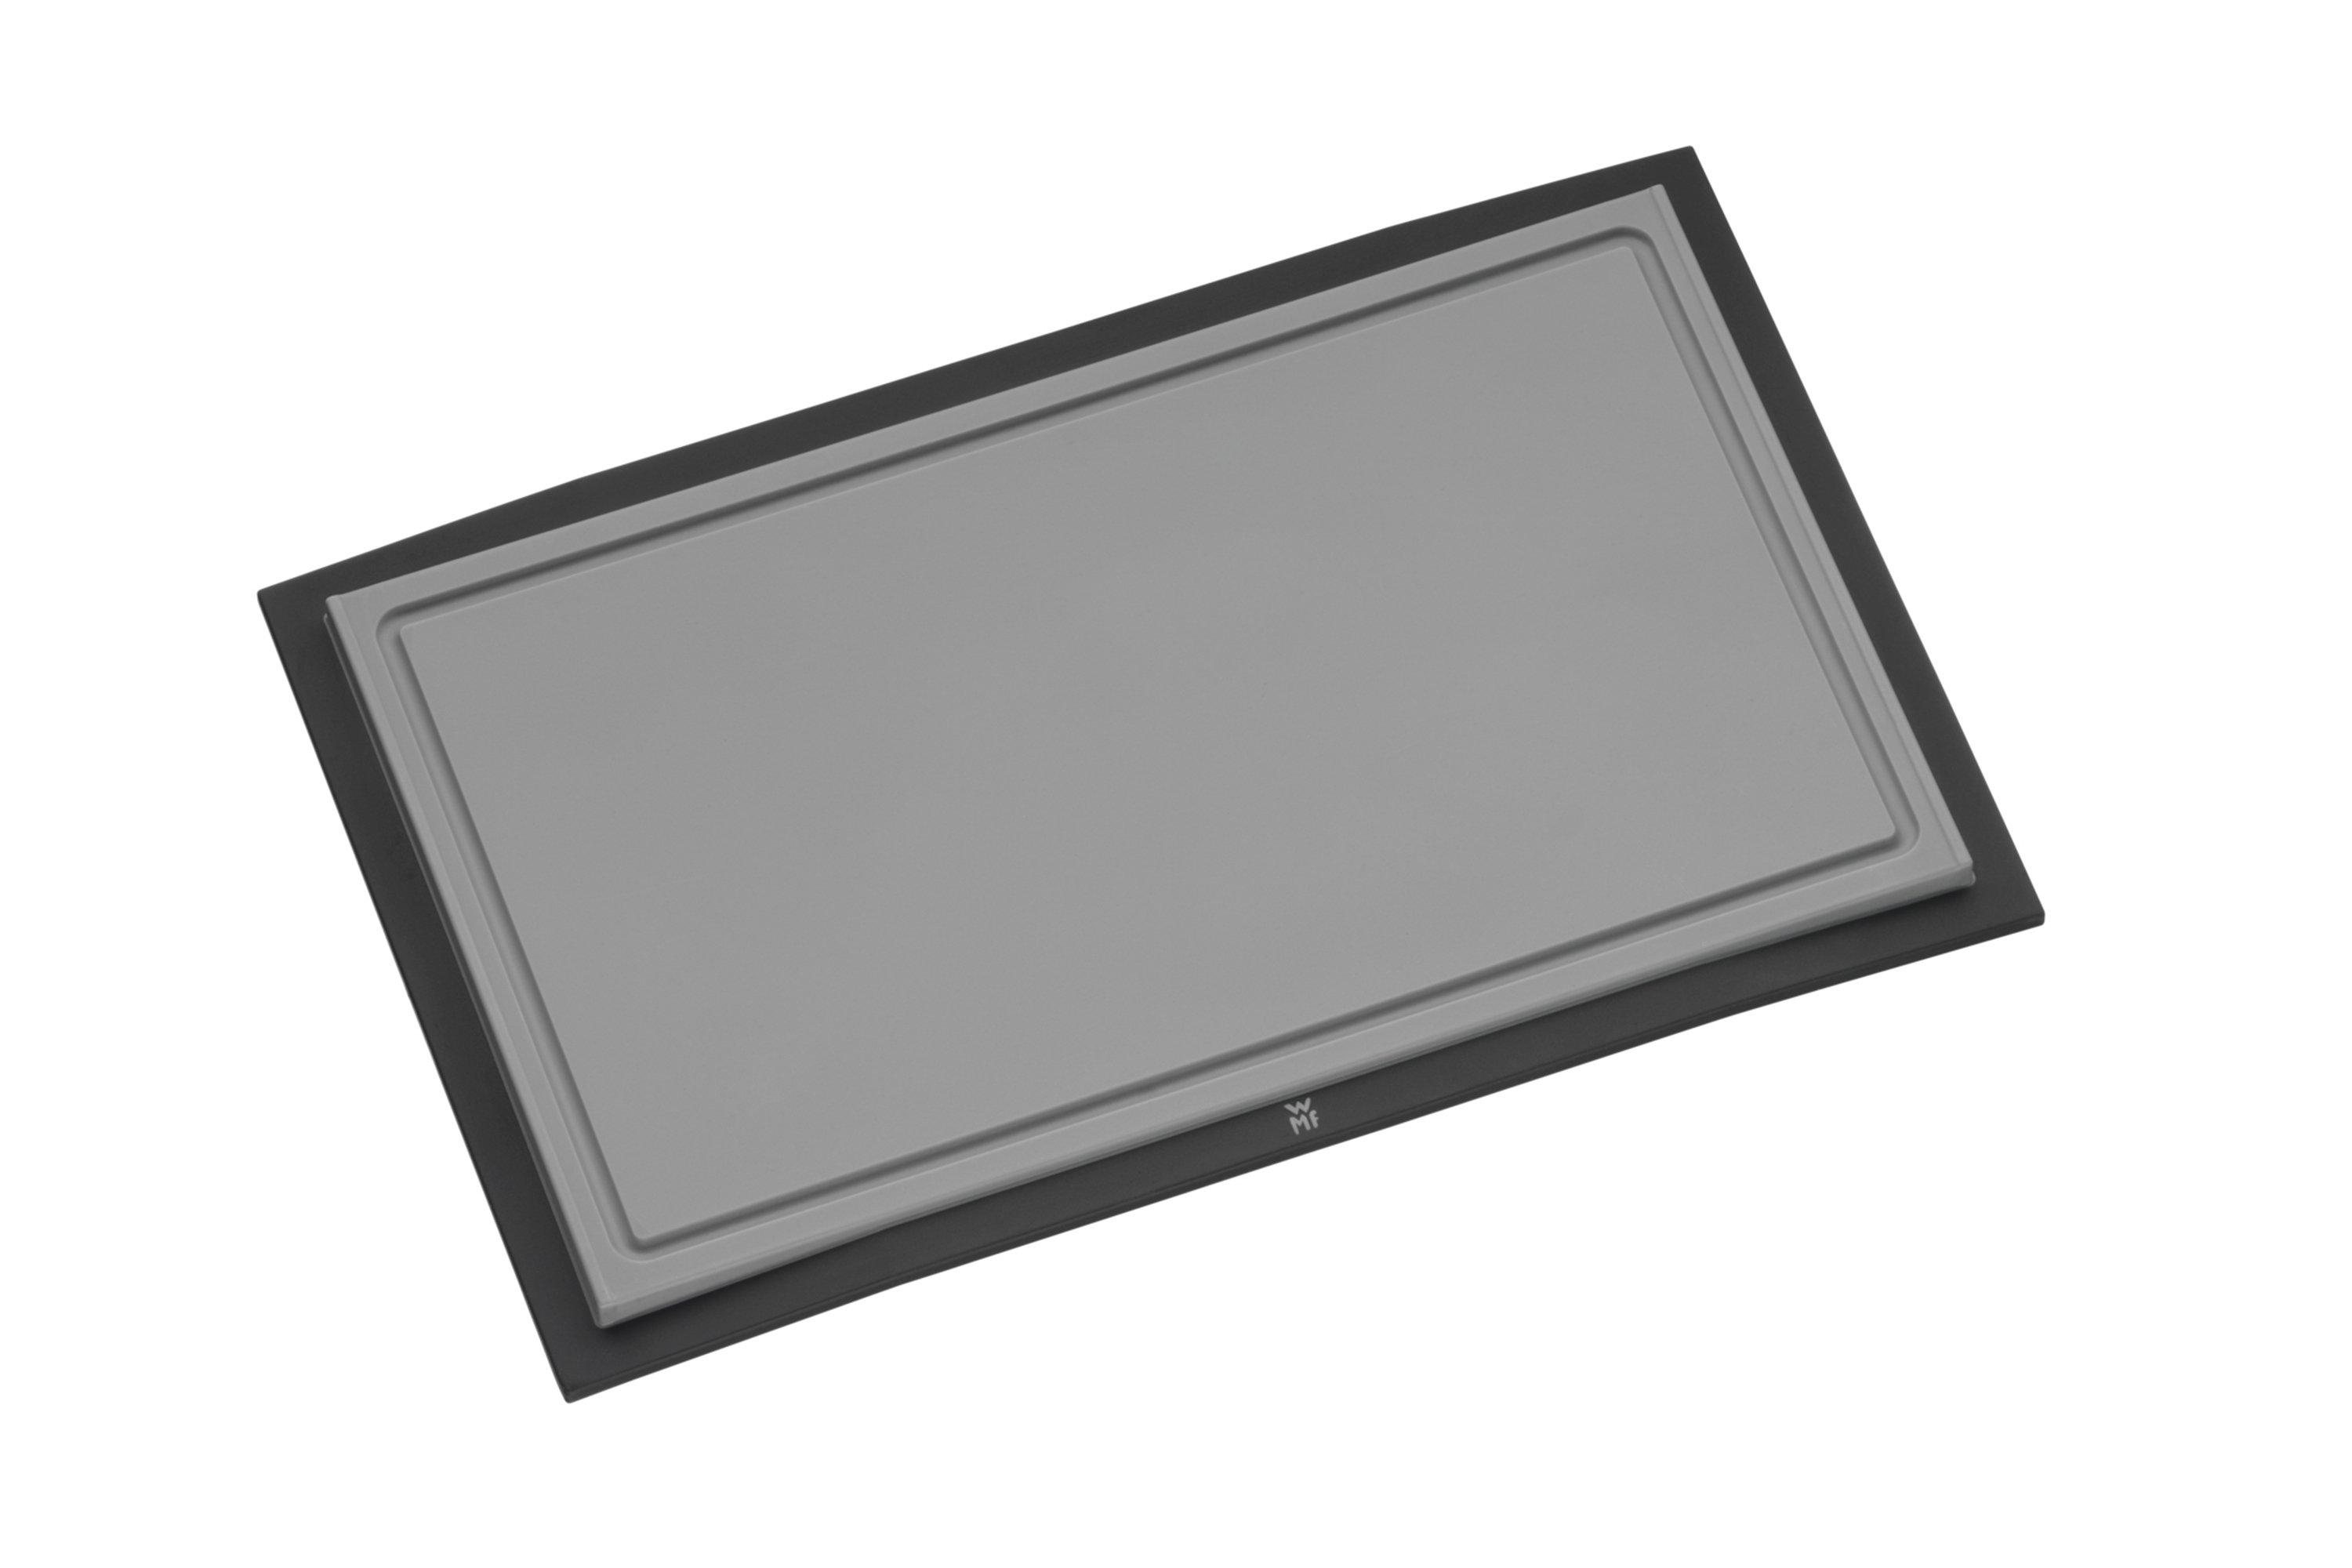 WMF Touch 1879506100 cutting board 32 x 20 cm, grey | Advantageously ...